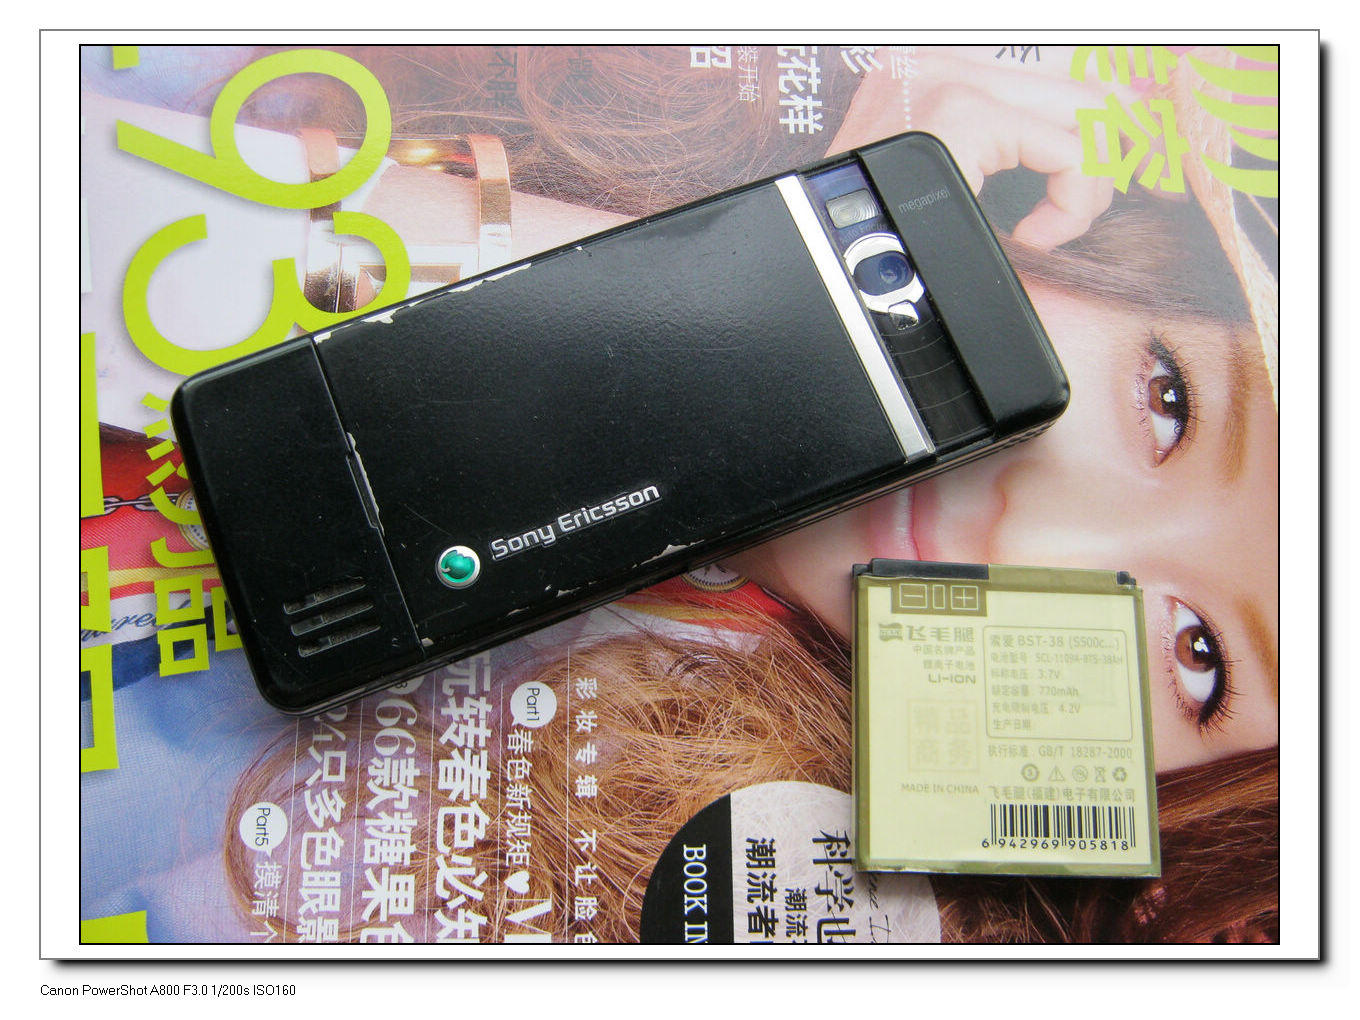 〓诚意出售2手SonyEricsson C902C手机〓送原